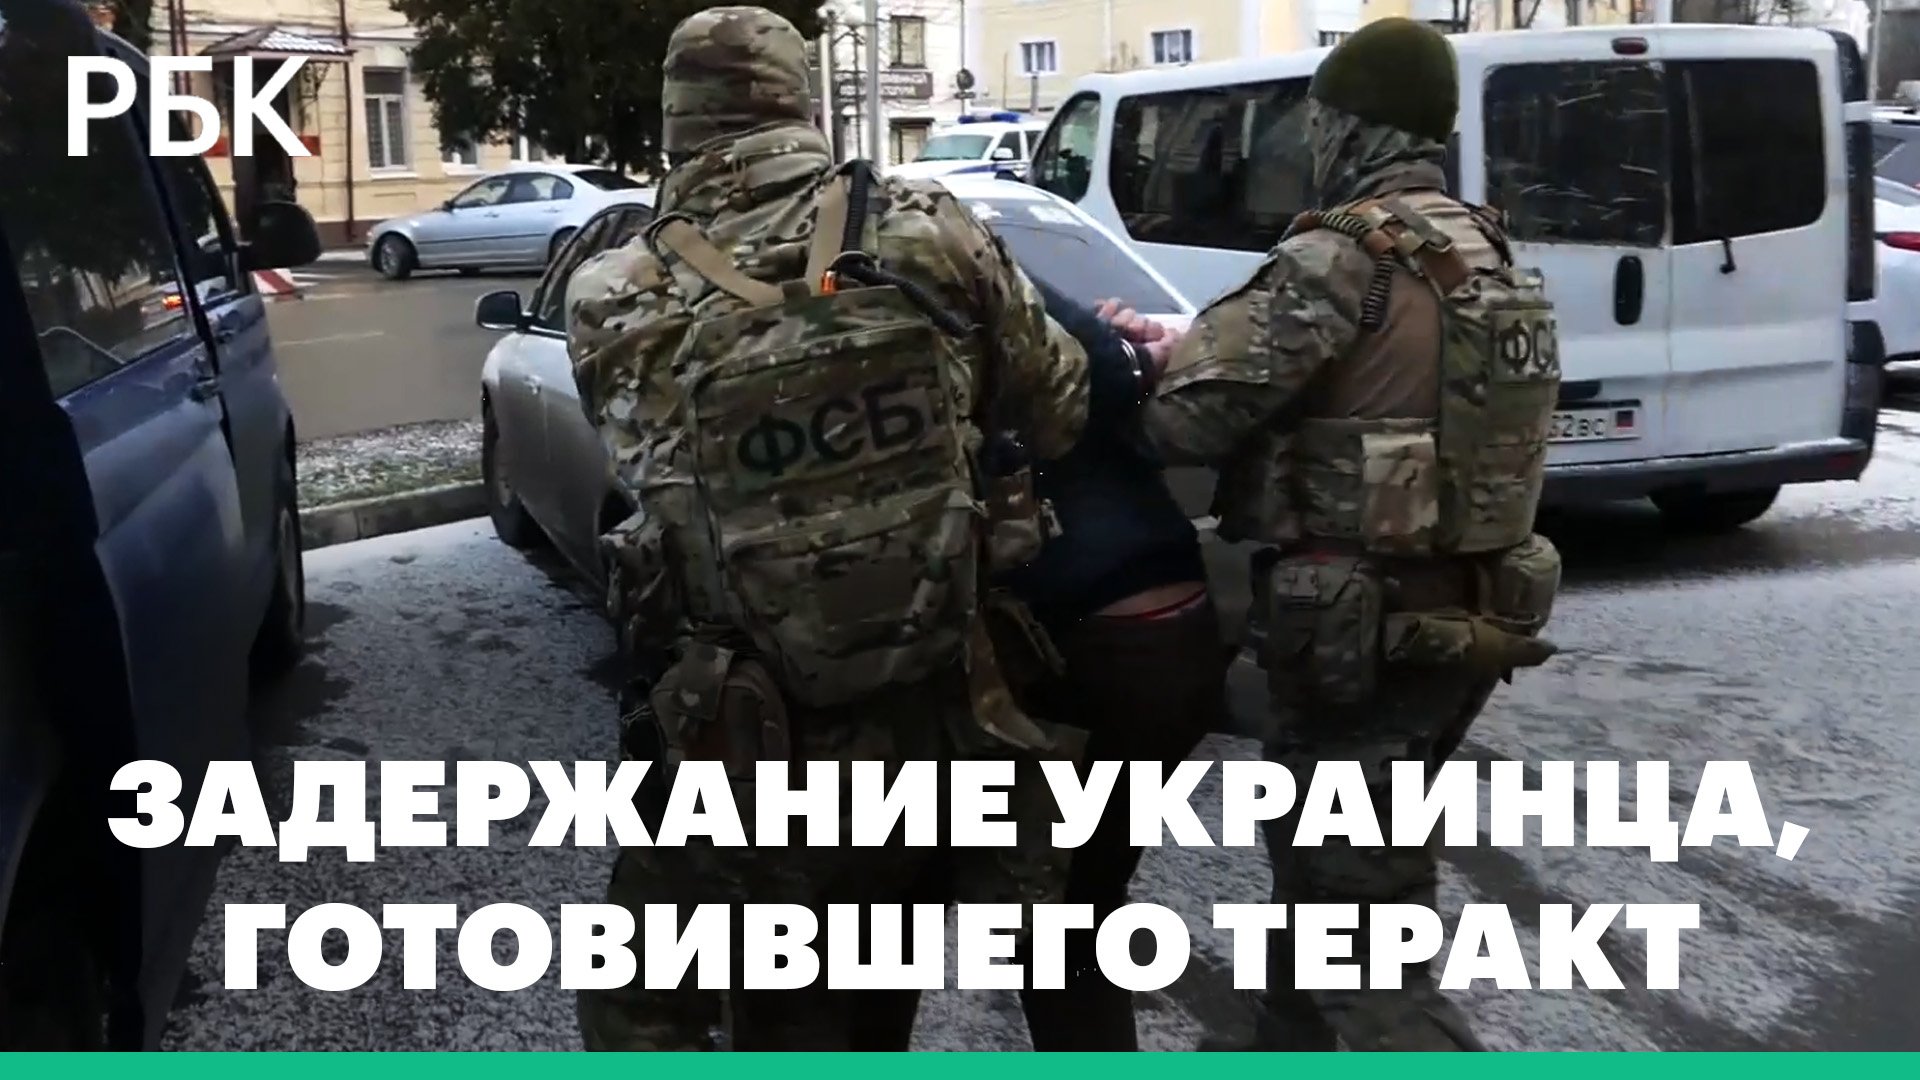 ФСБ задержала украинца, готовившего теракт в СКФО